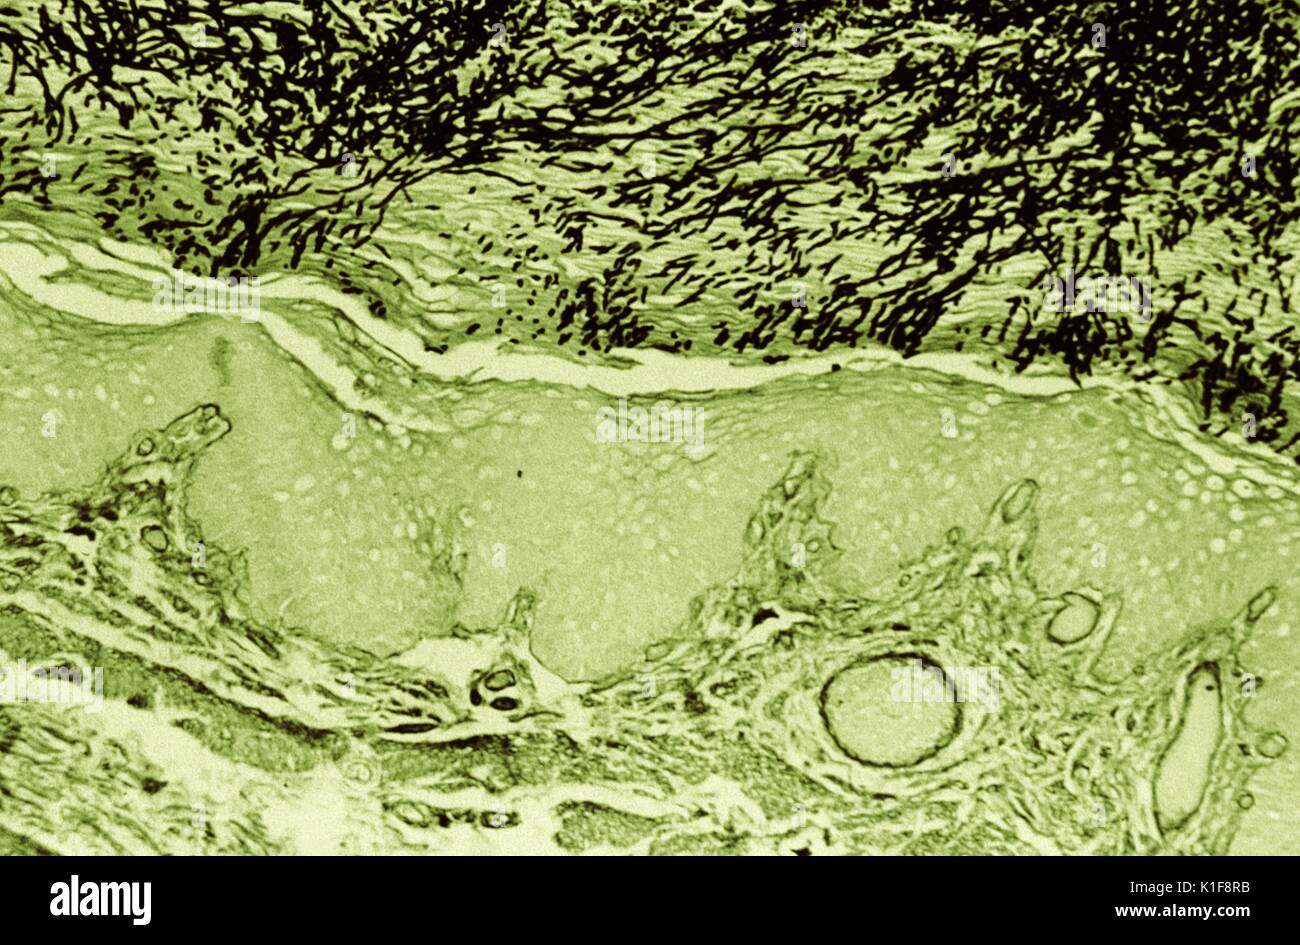 Histopathology of Candida esophagitis. Methenamine silver stain (digitally colorized). Histopathology of esophageal candidiasis in a rhesus monkey. Image courtesy CDC. 1974. Stock Photo